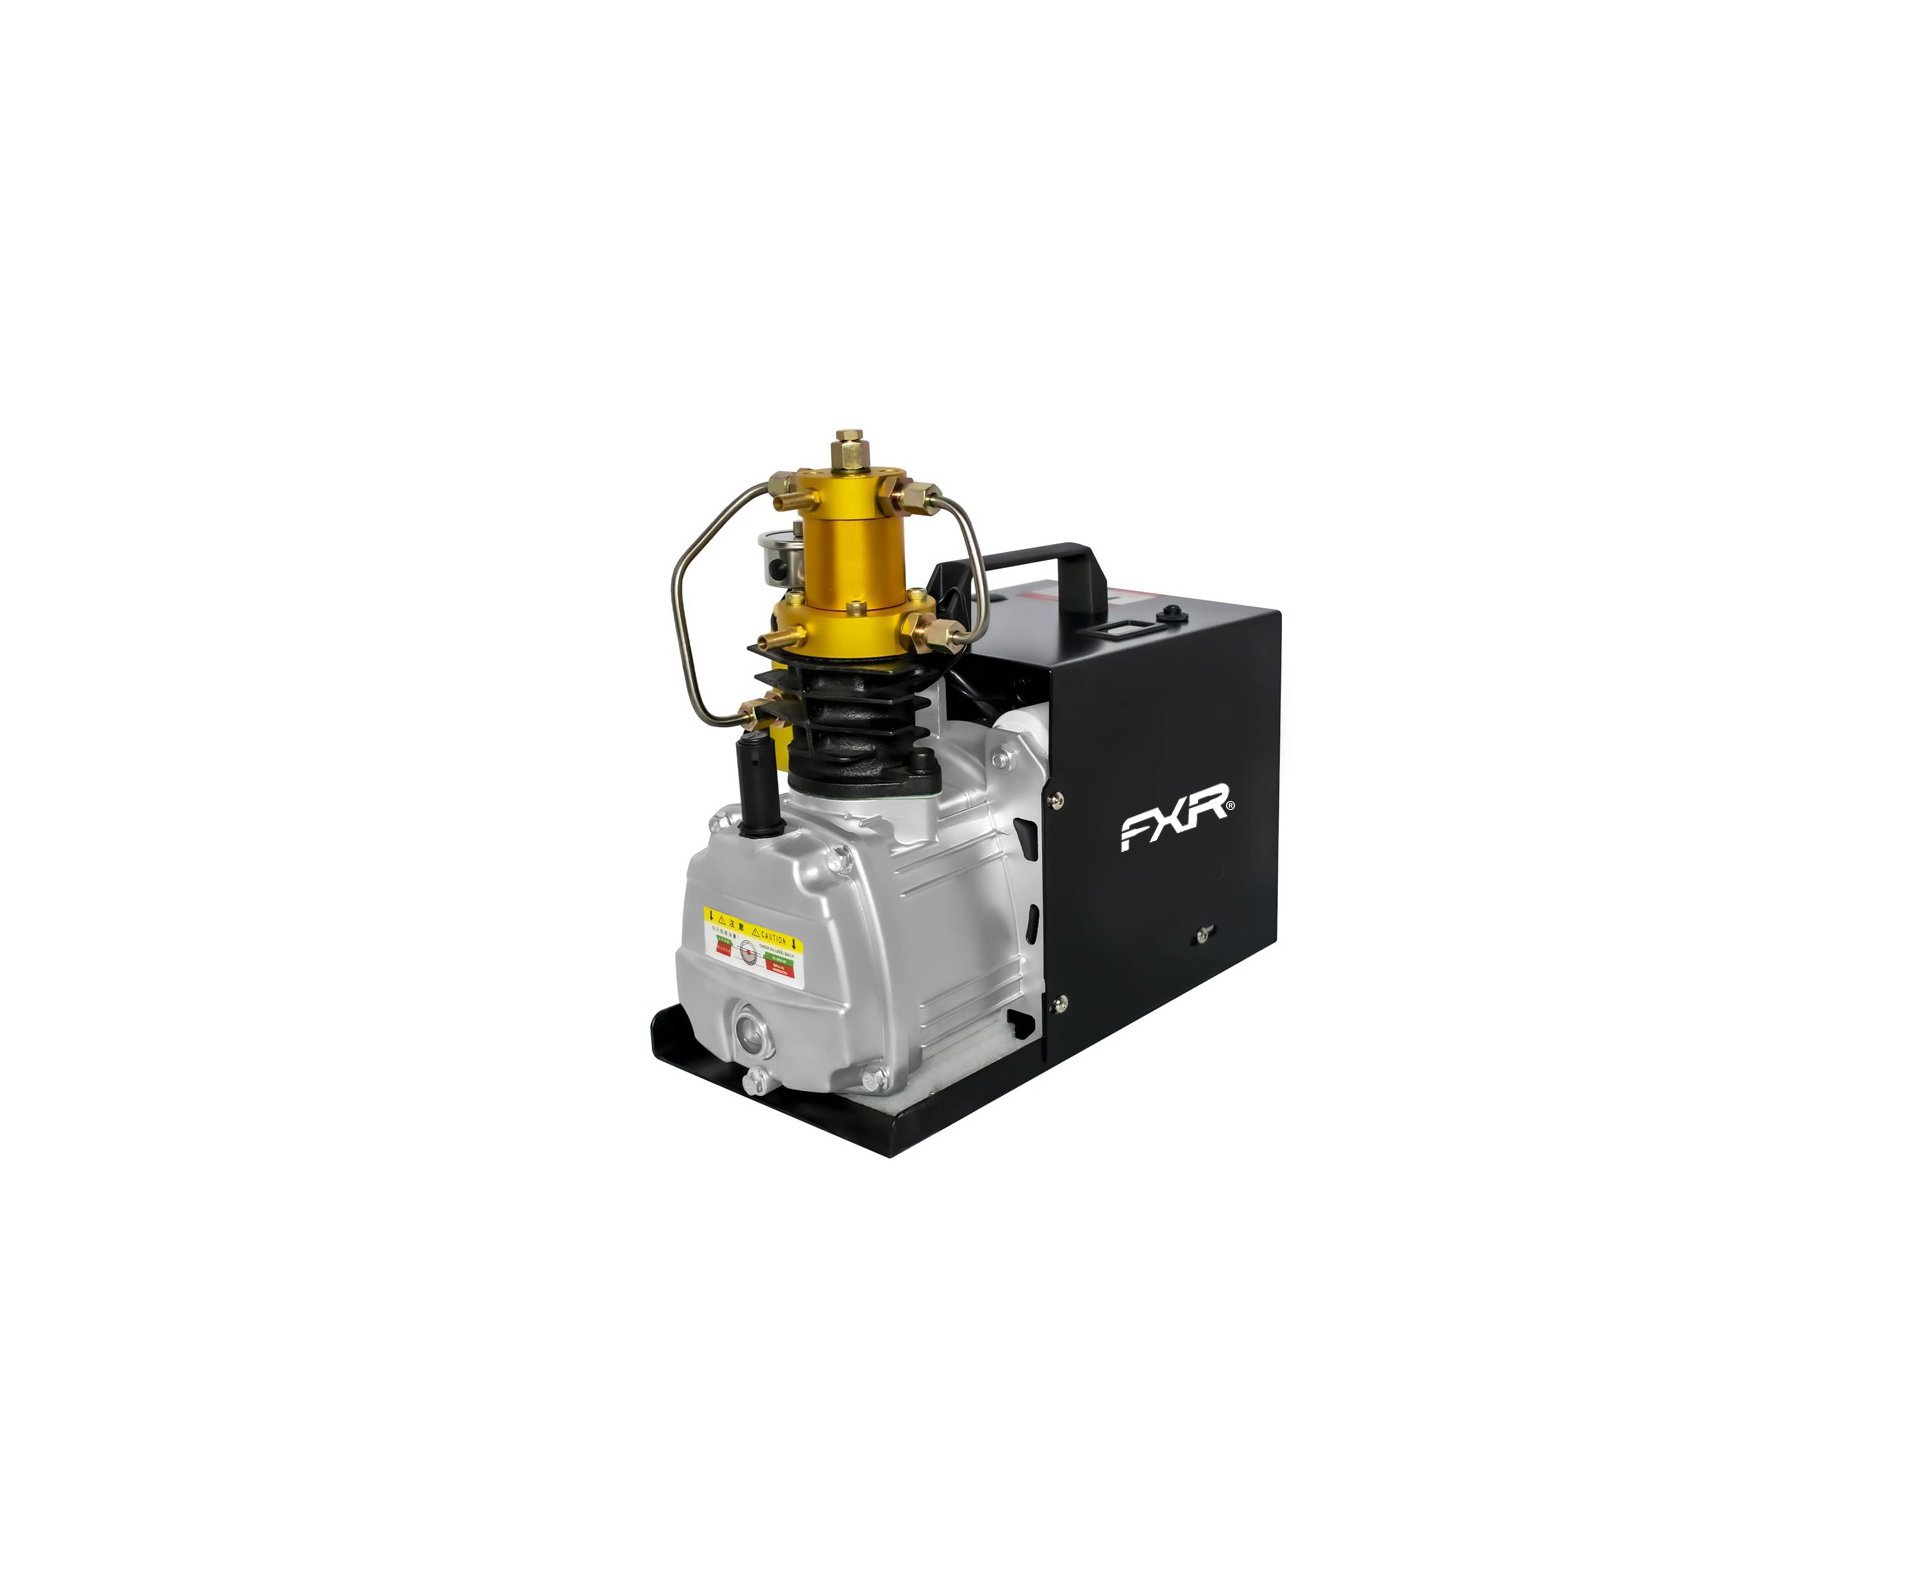 Compressor Elétrico para encher PCP 220v FXR-275